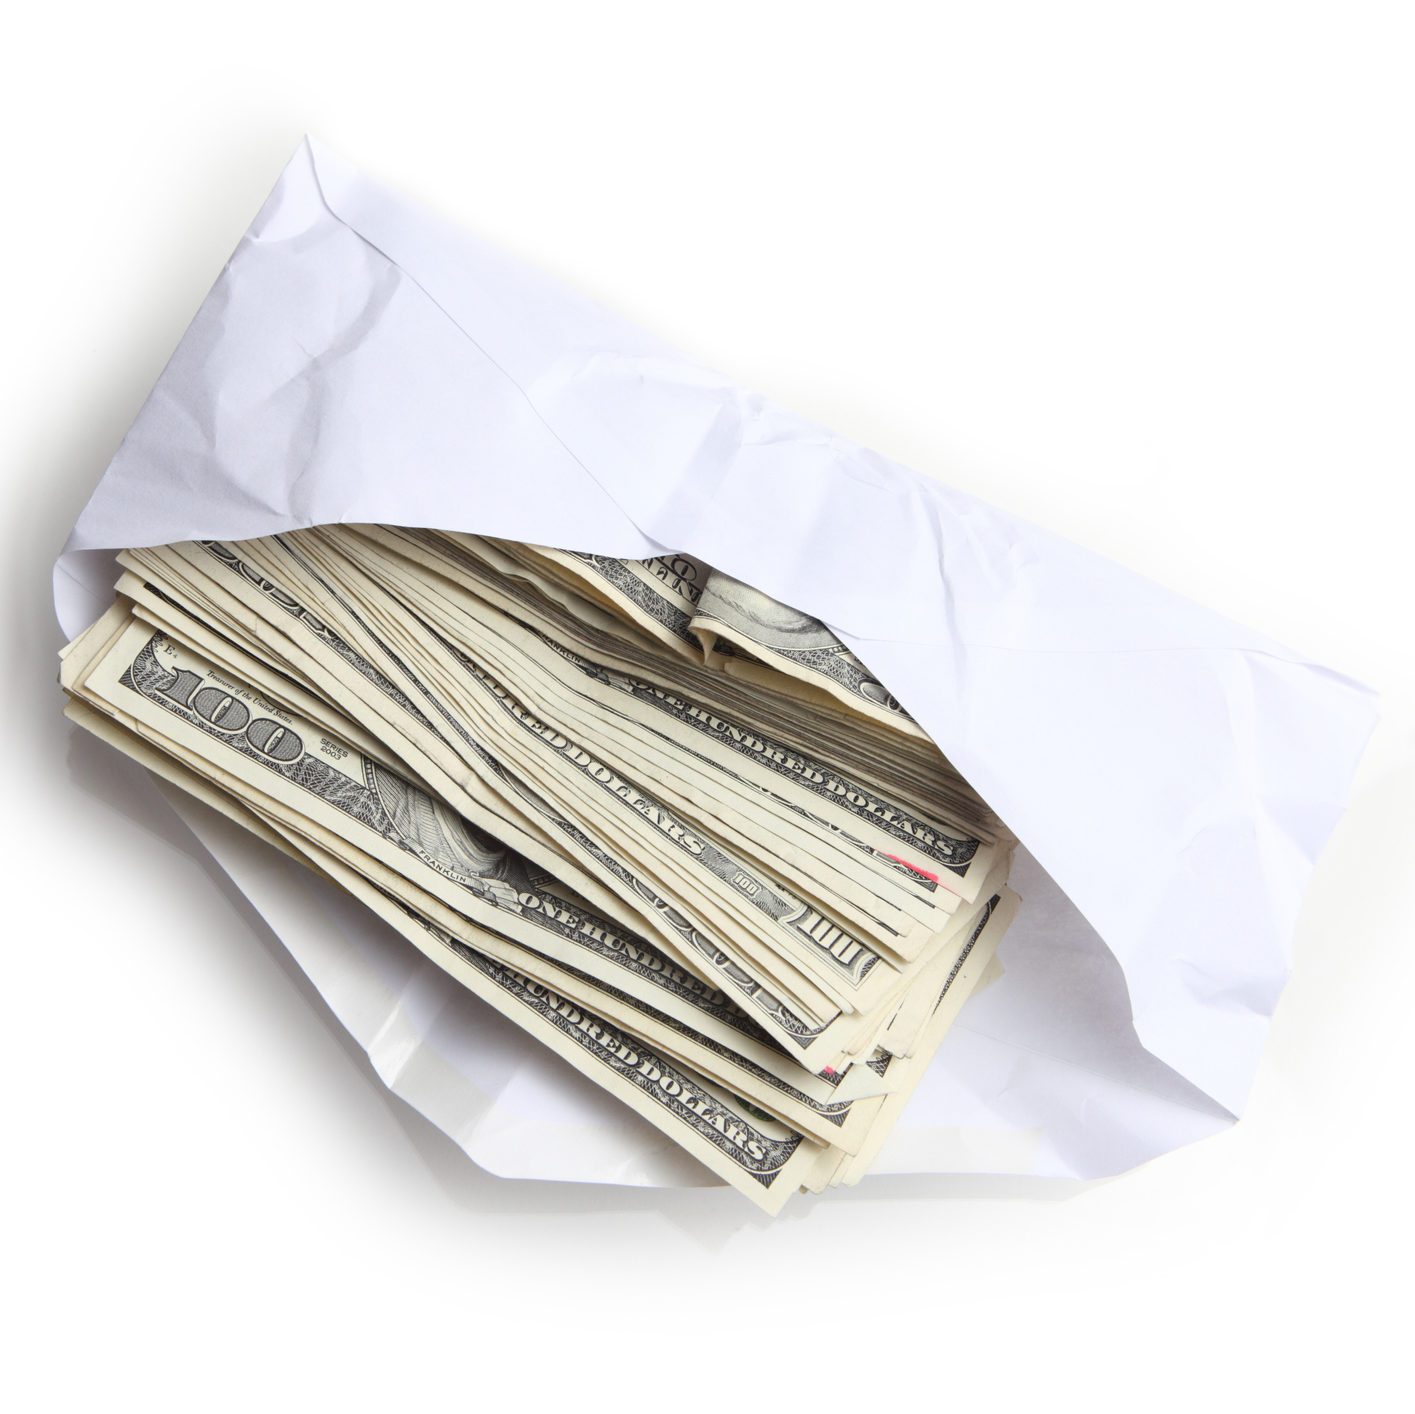 Envelope filled with stack of hundred dollar bills